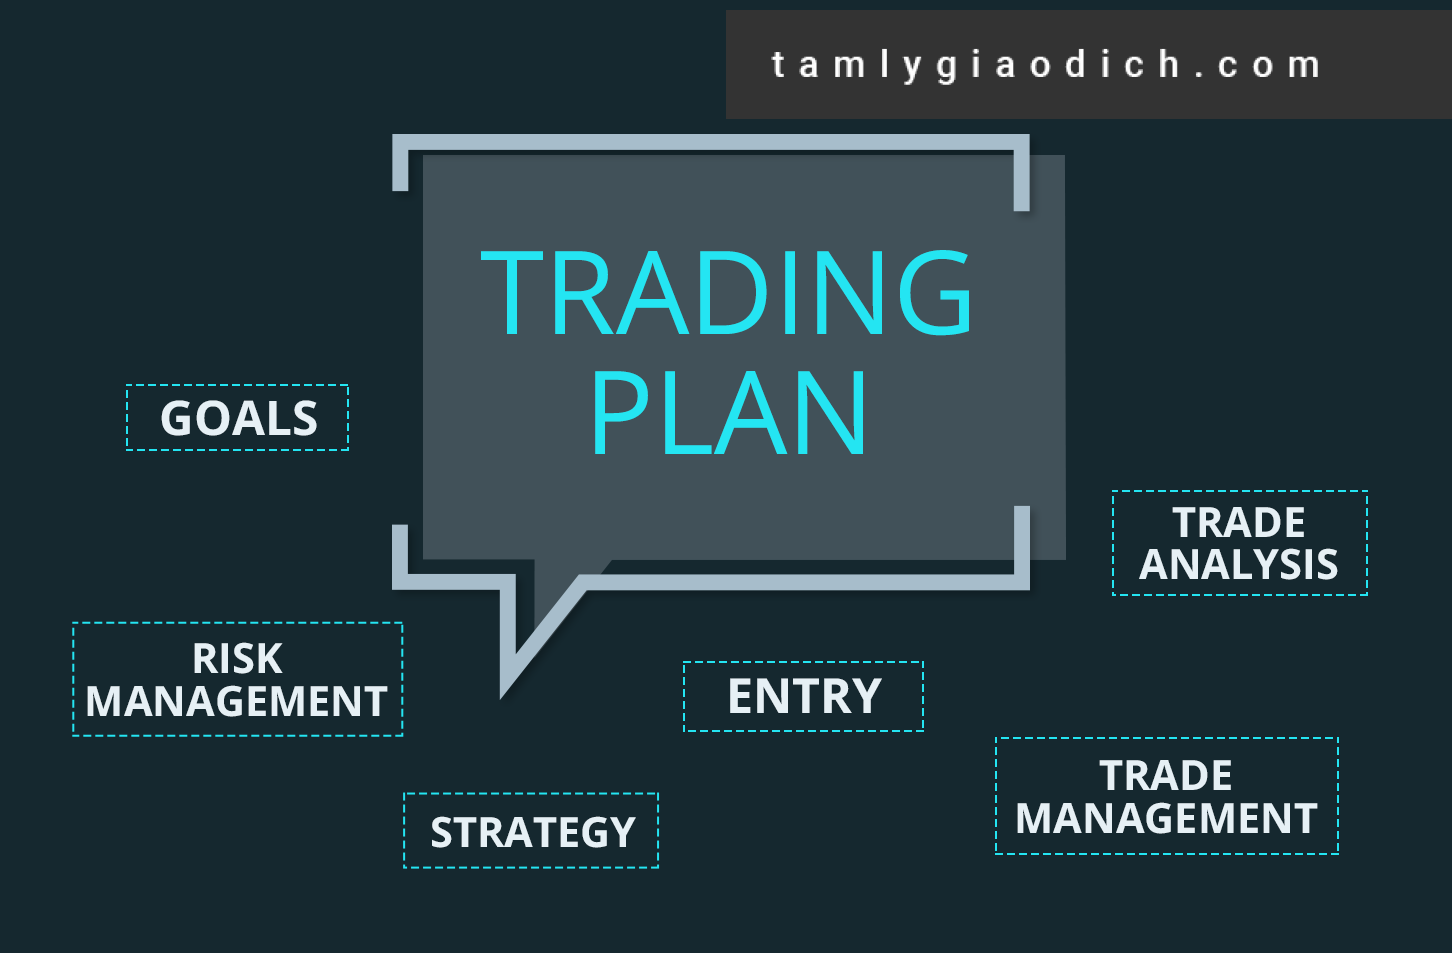 Điều quan trọng là trader cần phải có chiến lược giao dịch lâu dài, hợp lý